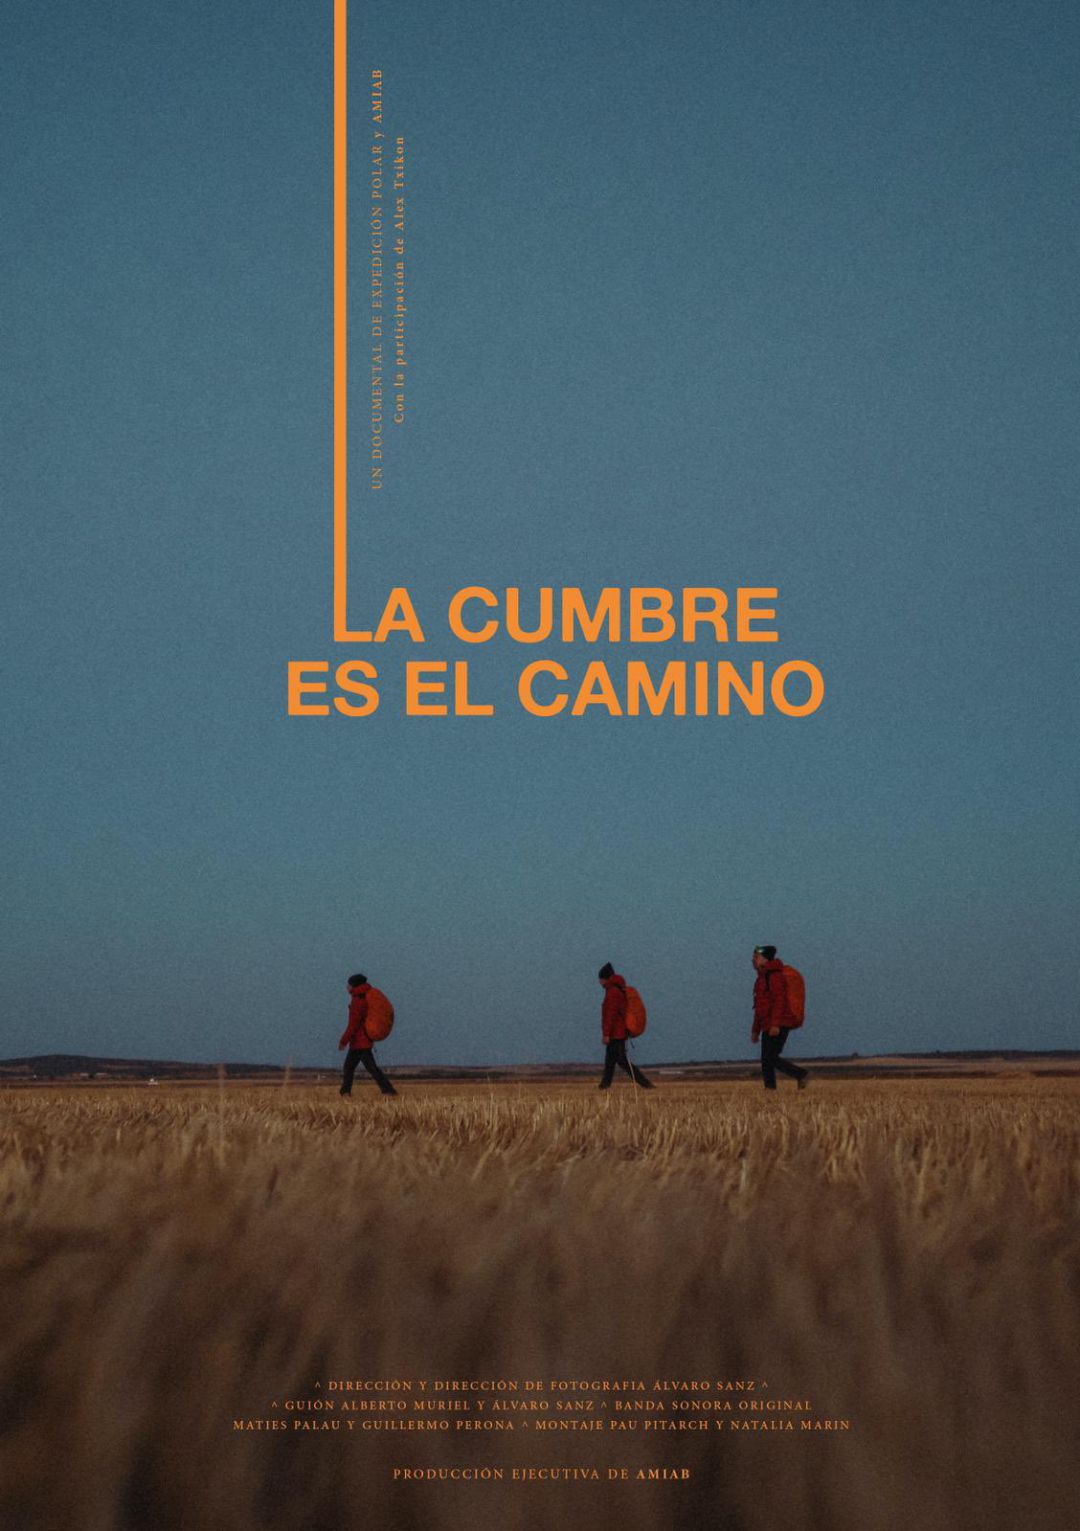 "La cumbre es el camino" relata la experiencia de los tres jóvenes de Albacete / Cadena SER